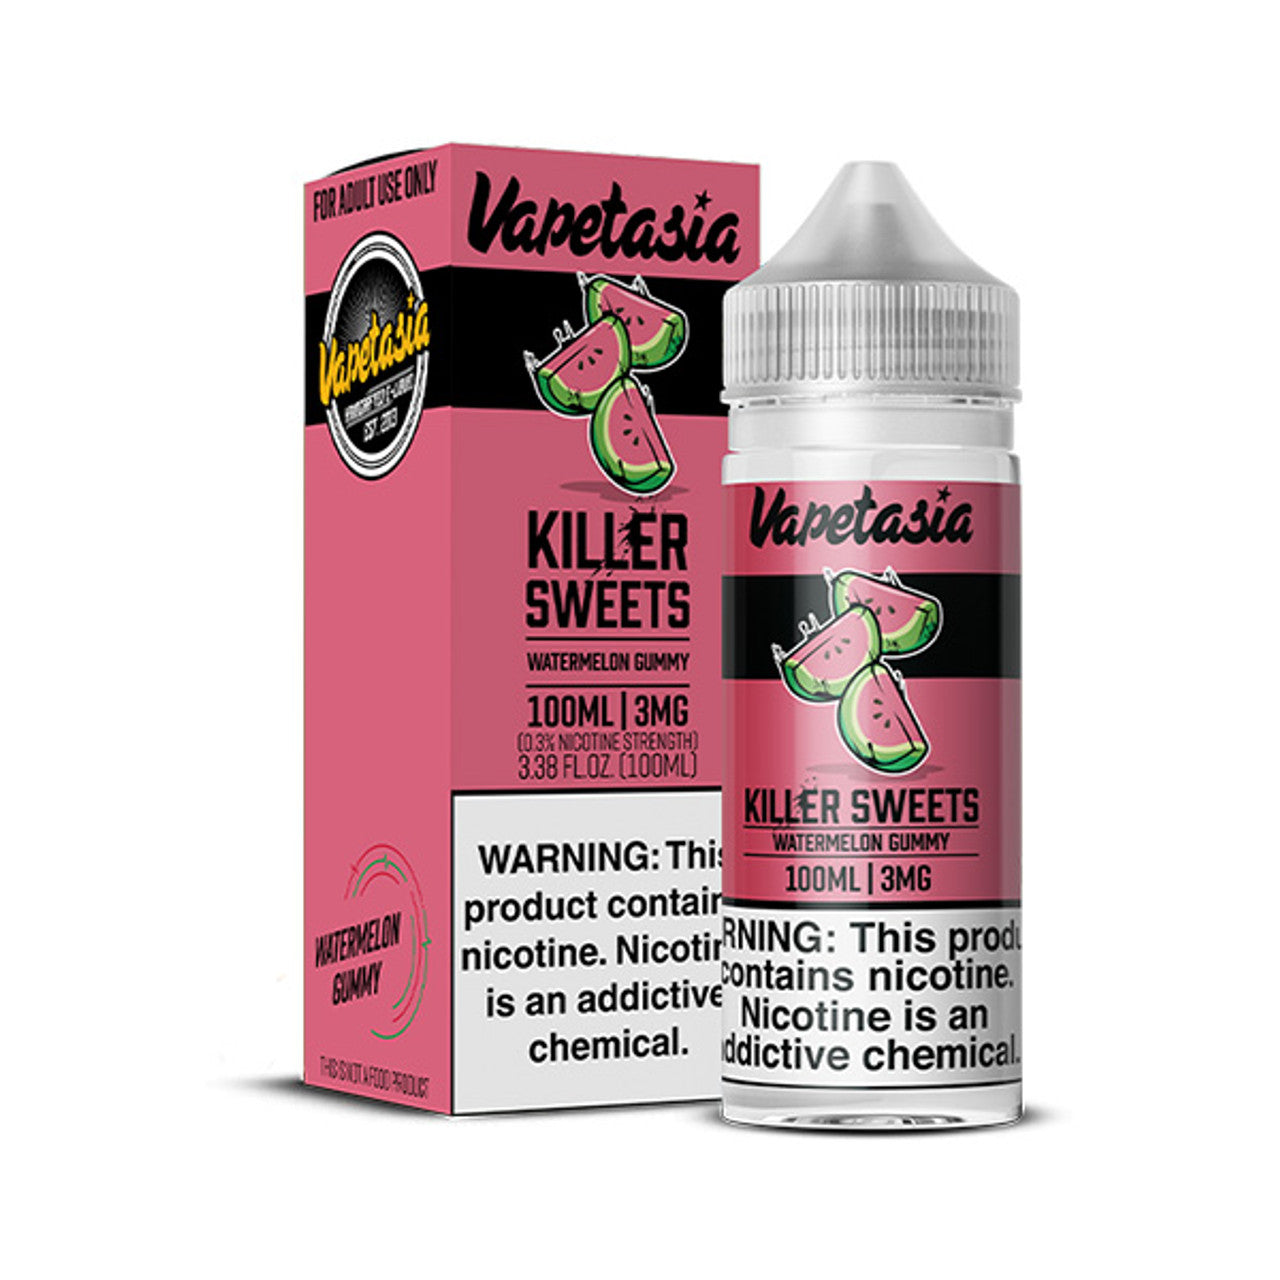 Vapetasia Killer Sweets Watermelon Gummy 100ML